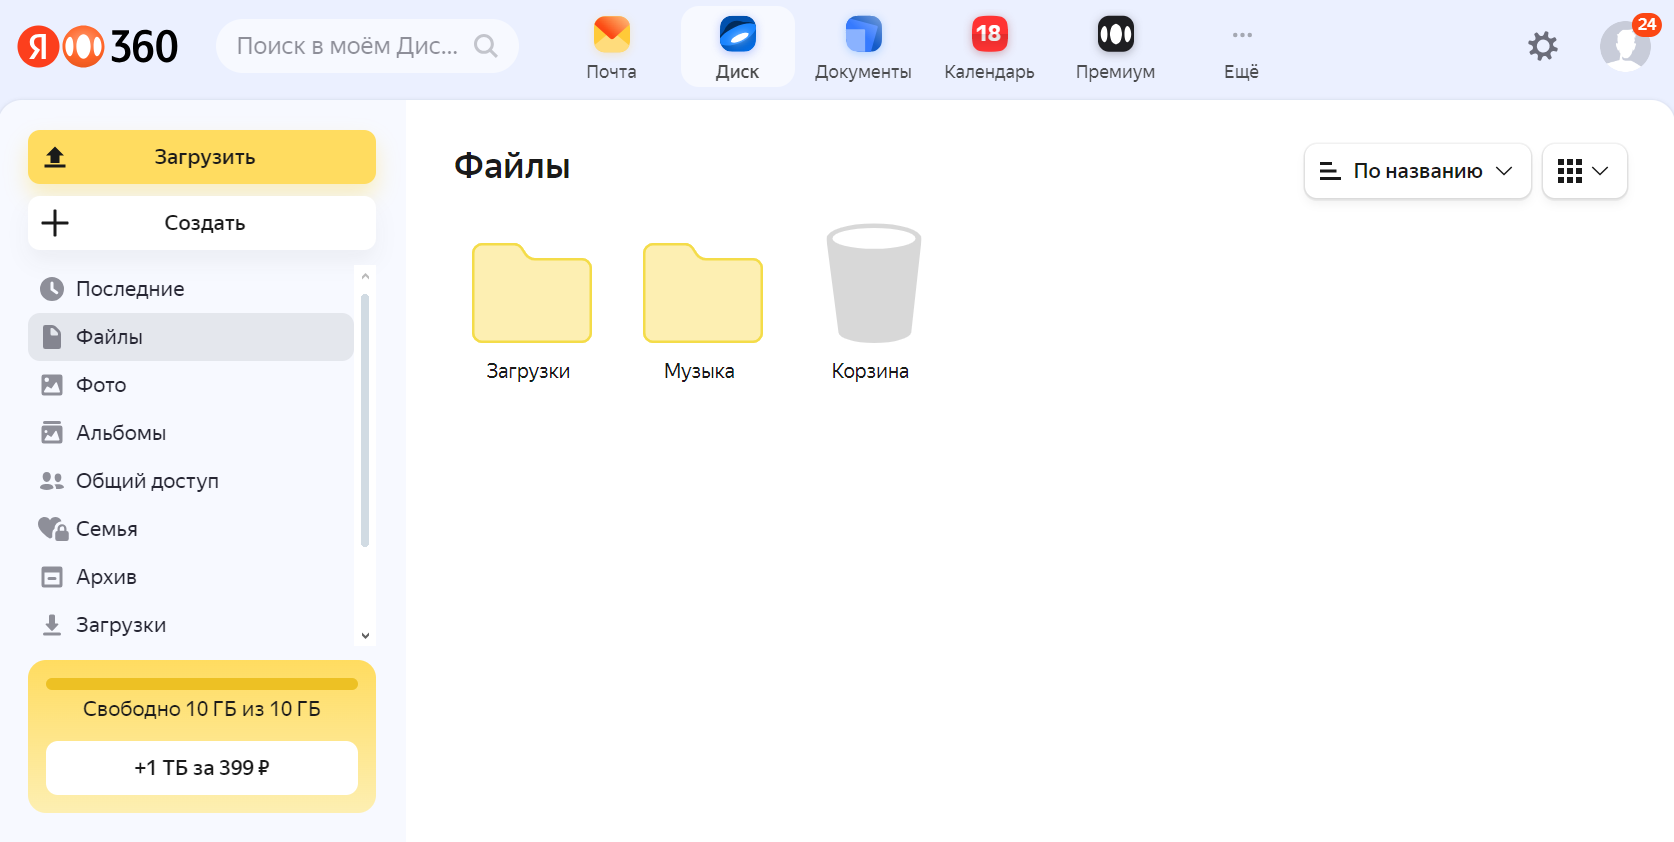 У сервиса простой интерфейс без тонких настроек. Разобраться в нем легко, а в бесплатной версии четверть экрана занимает реклама других сервисов «Яндекса»